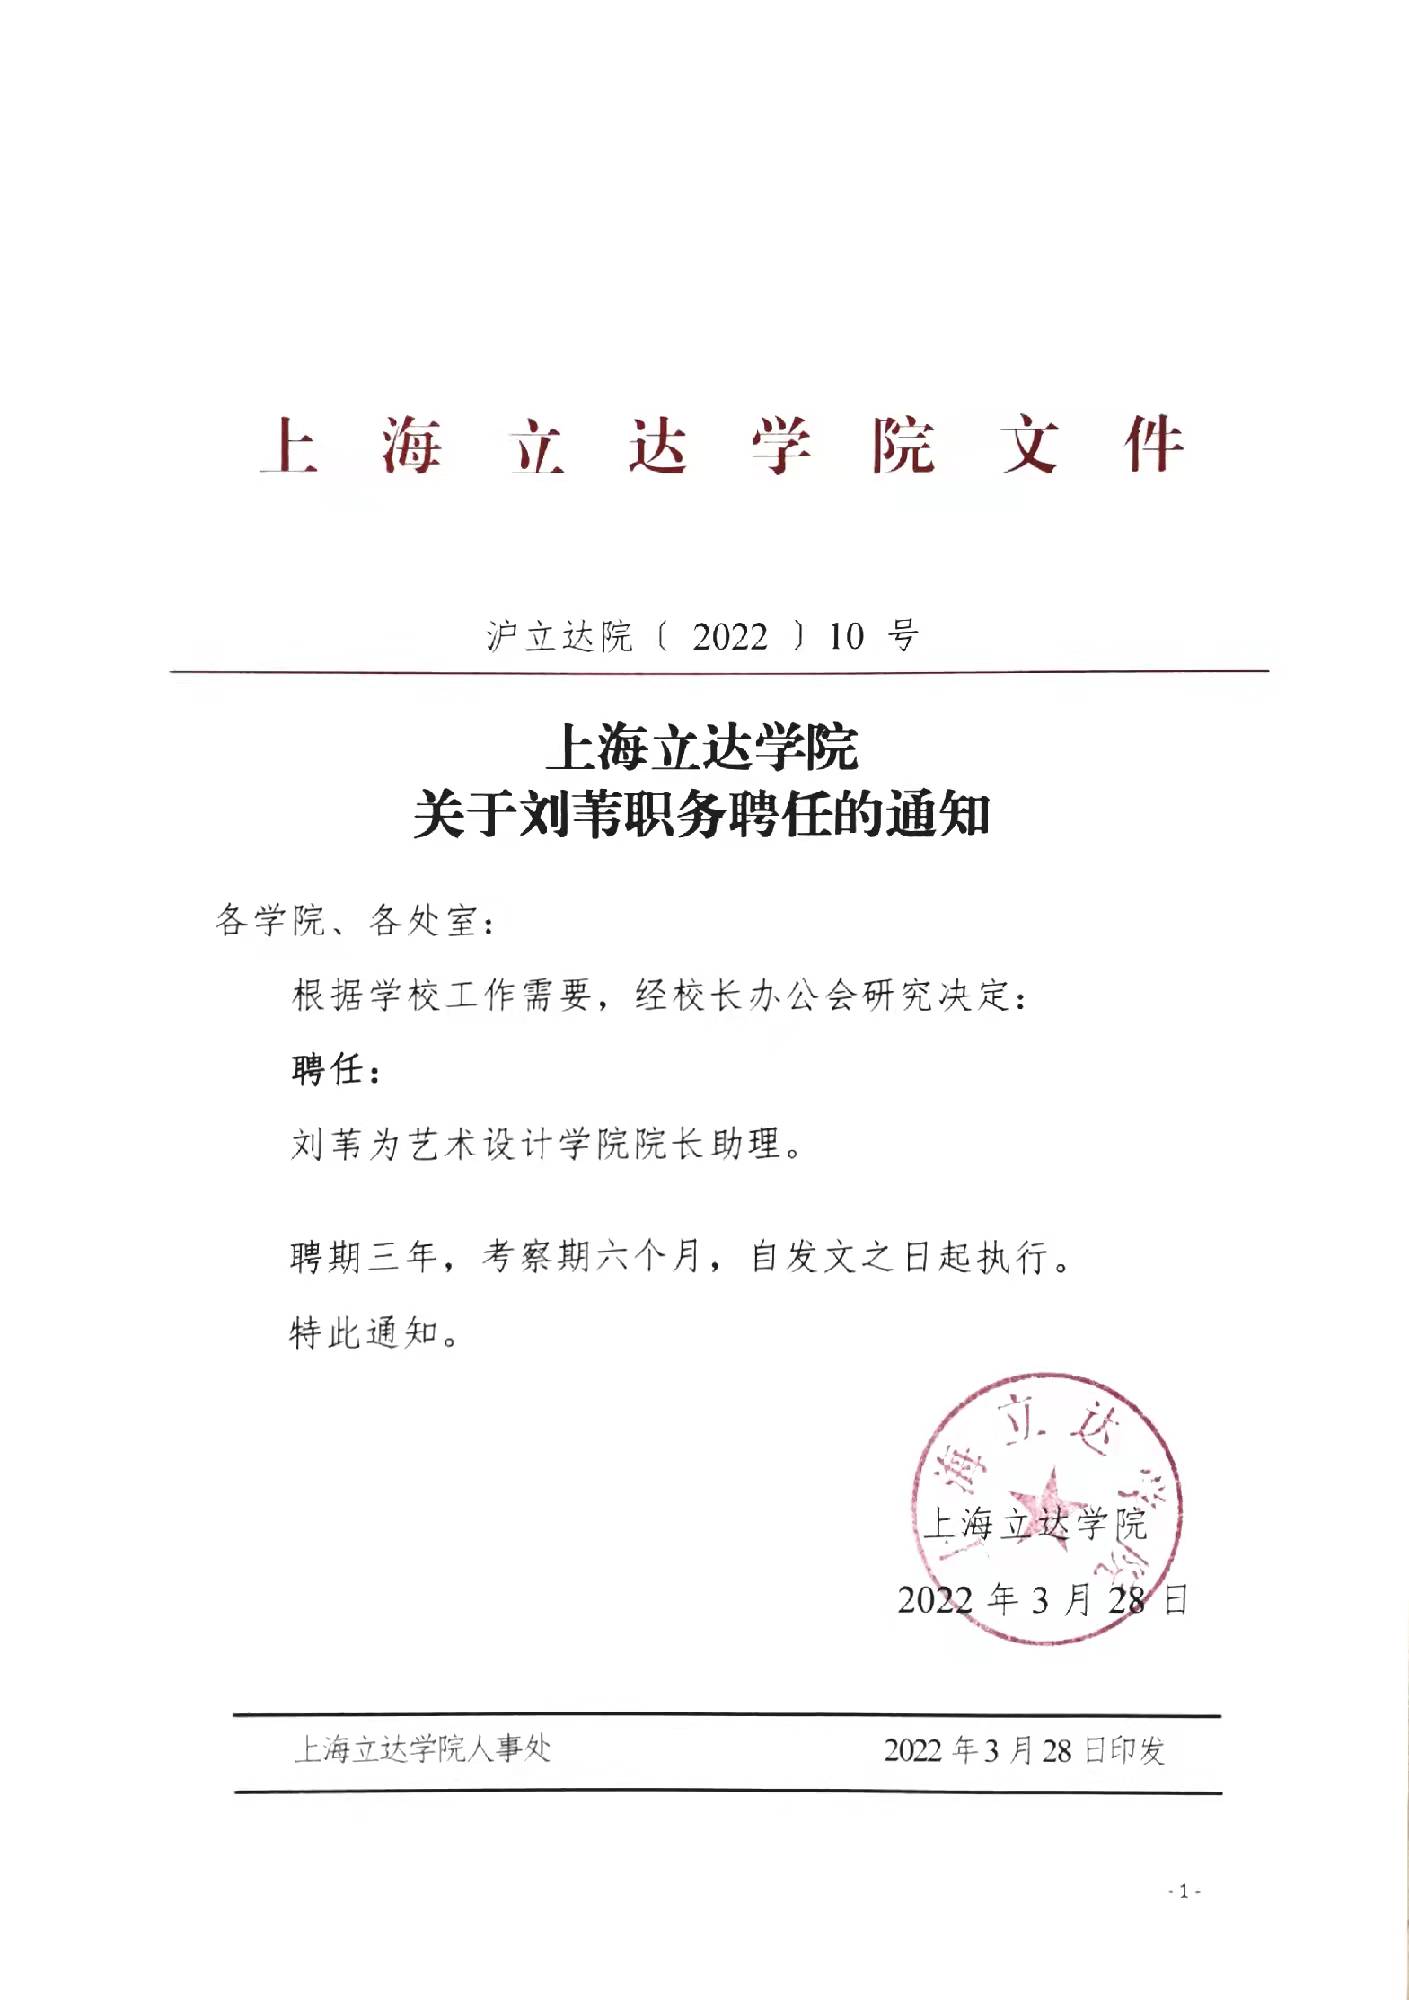 上海立达学院关于刘苇职务聘任的通知